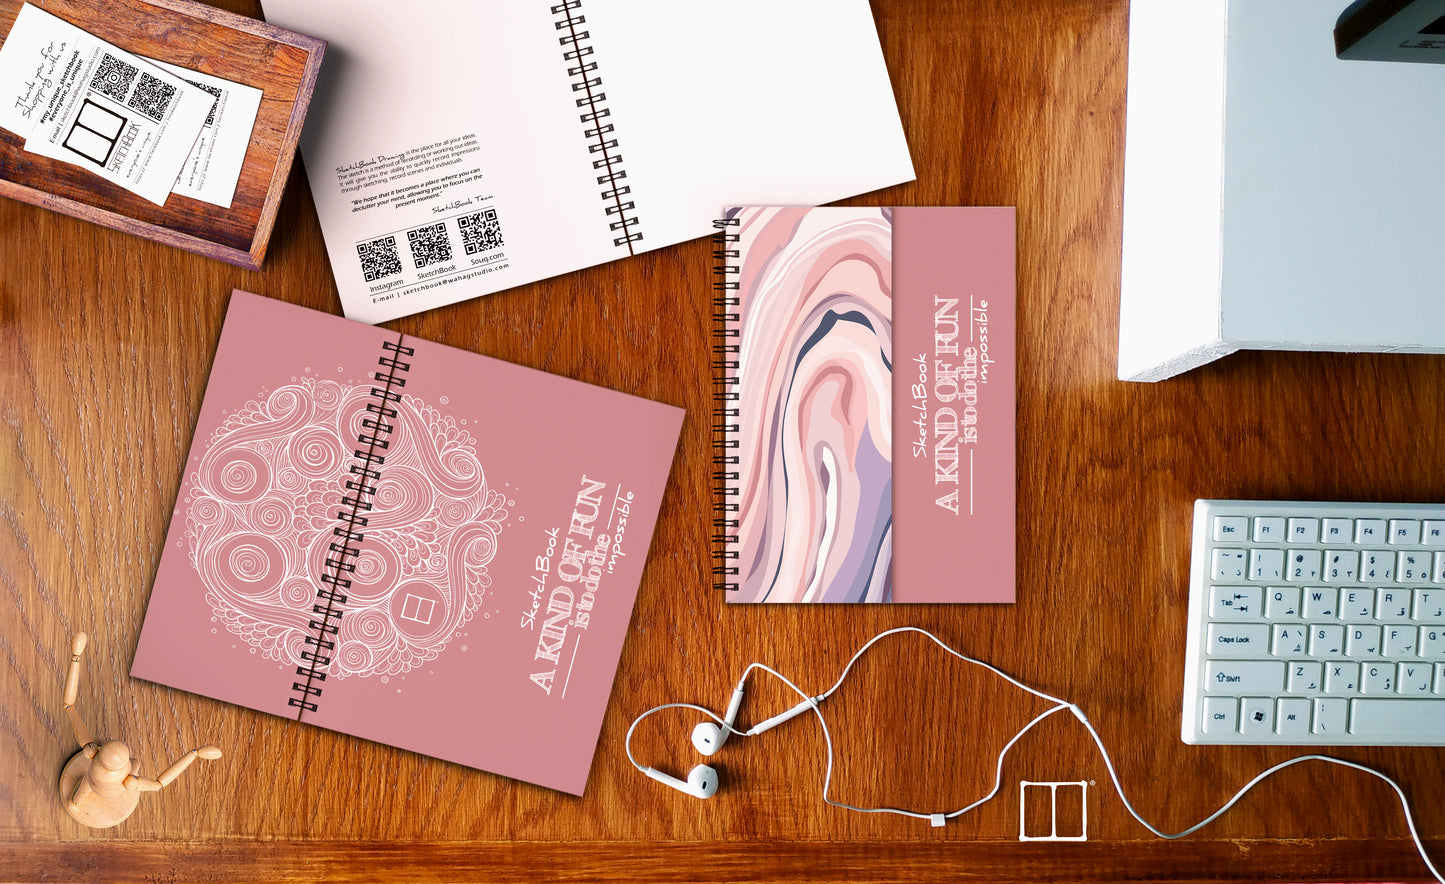 Sketchbook | 20 X 14 cm - (Half Cover) - Pink - from SketchBook Stationery